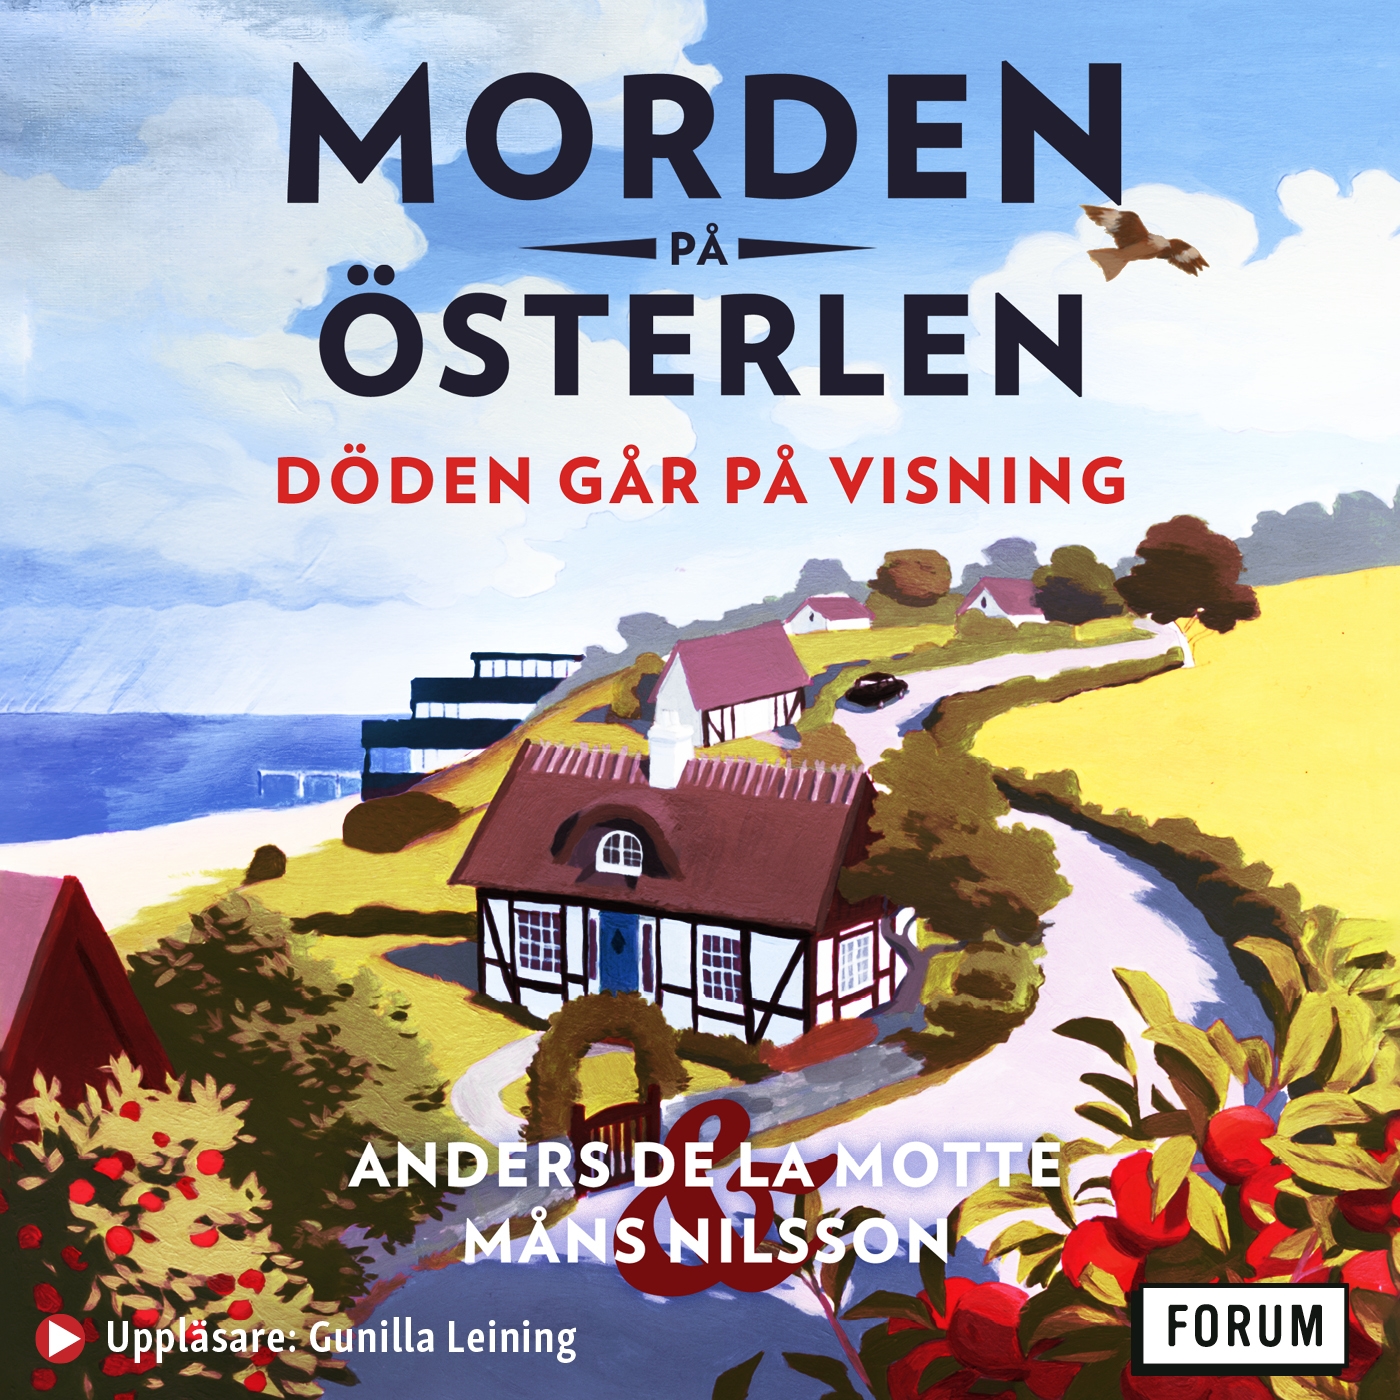 Måns Nilsson, Gunilla Leining, Anders de la Motte: Döden går på visning (AudiobookFormat, Swedish language, 2021, Bokförlaget Forum)